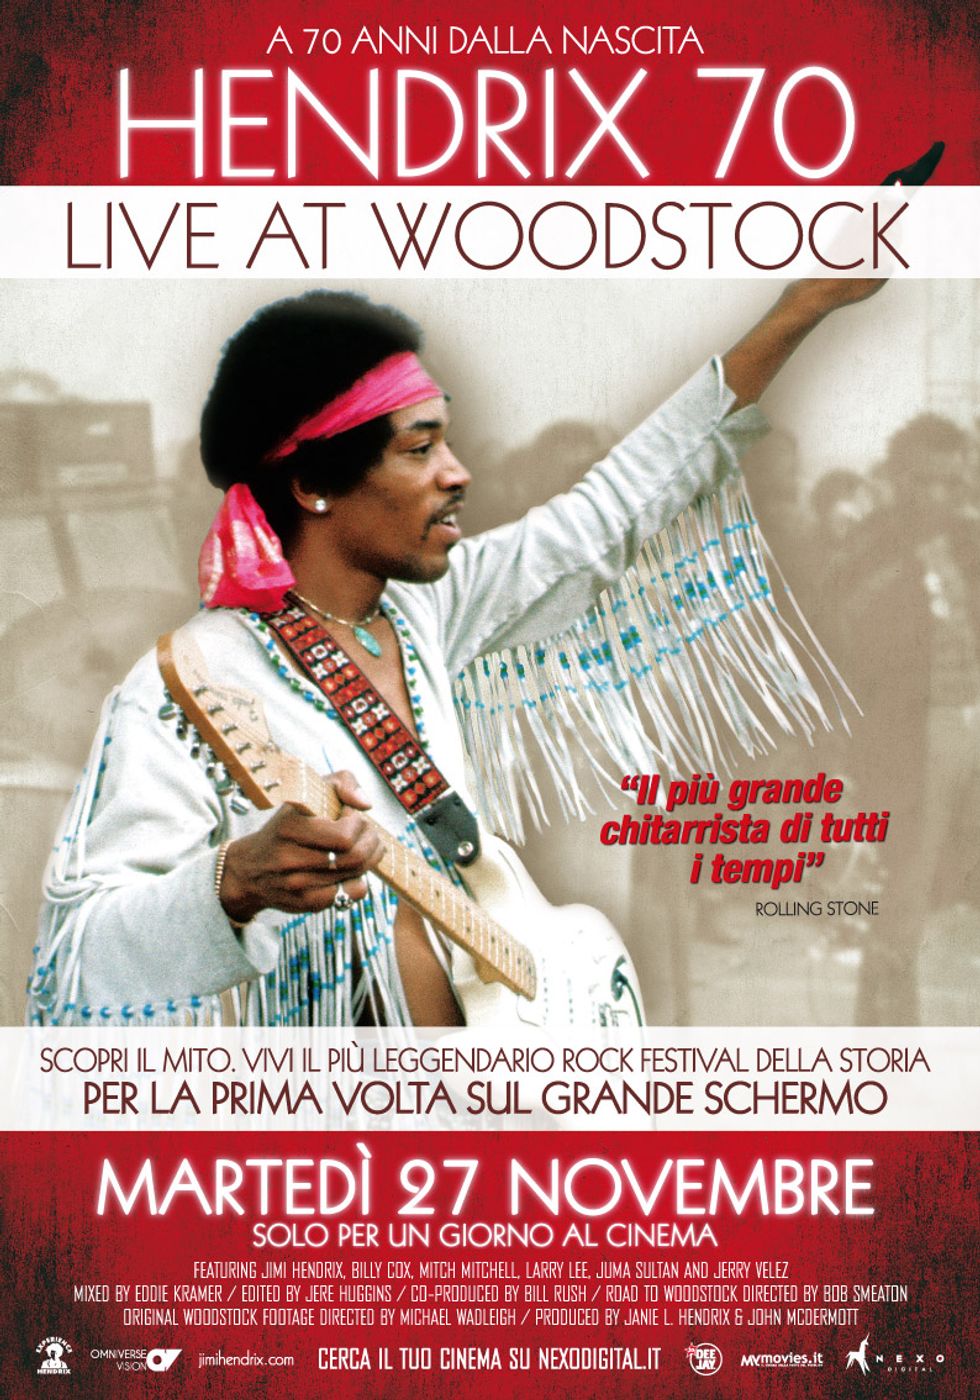 Jimi Hendrix a Woodstock, al cinema per ricordare i 70 anni della nascita